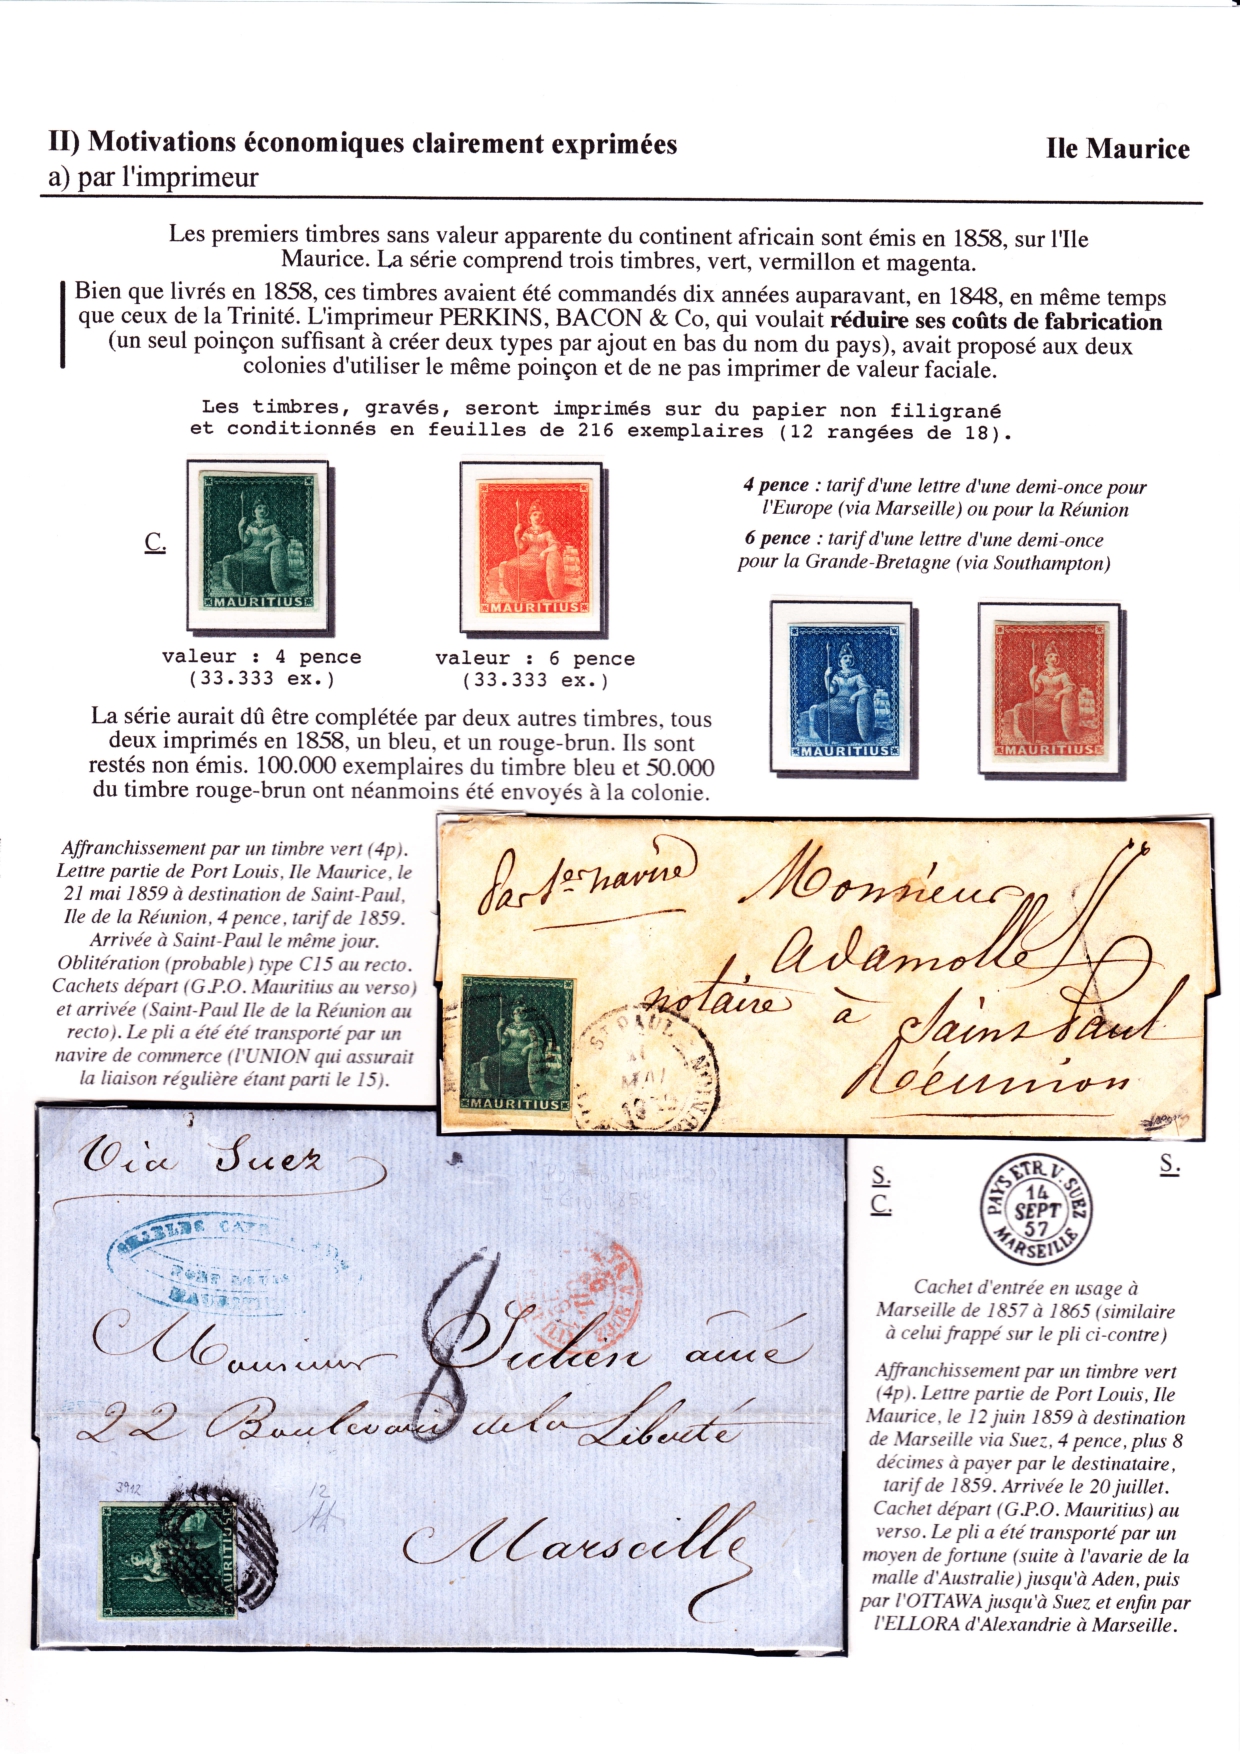 Les d��buts des timbres sans valeur faciale apparente p. 36